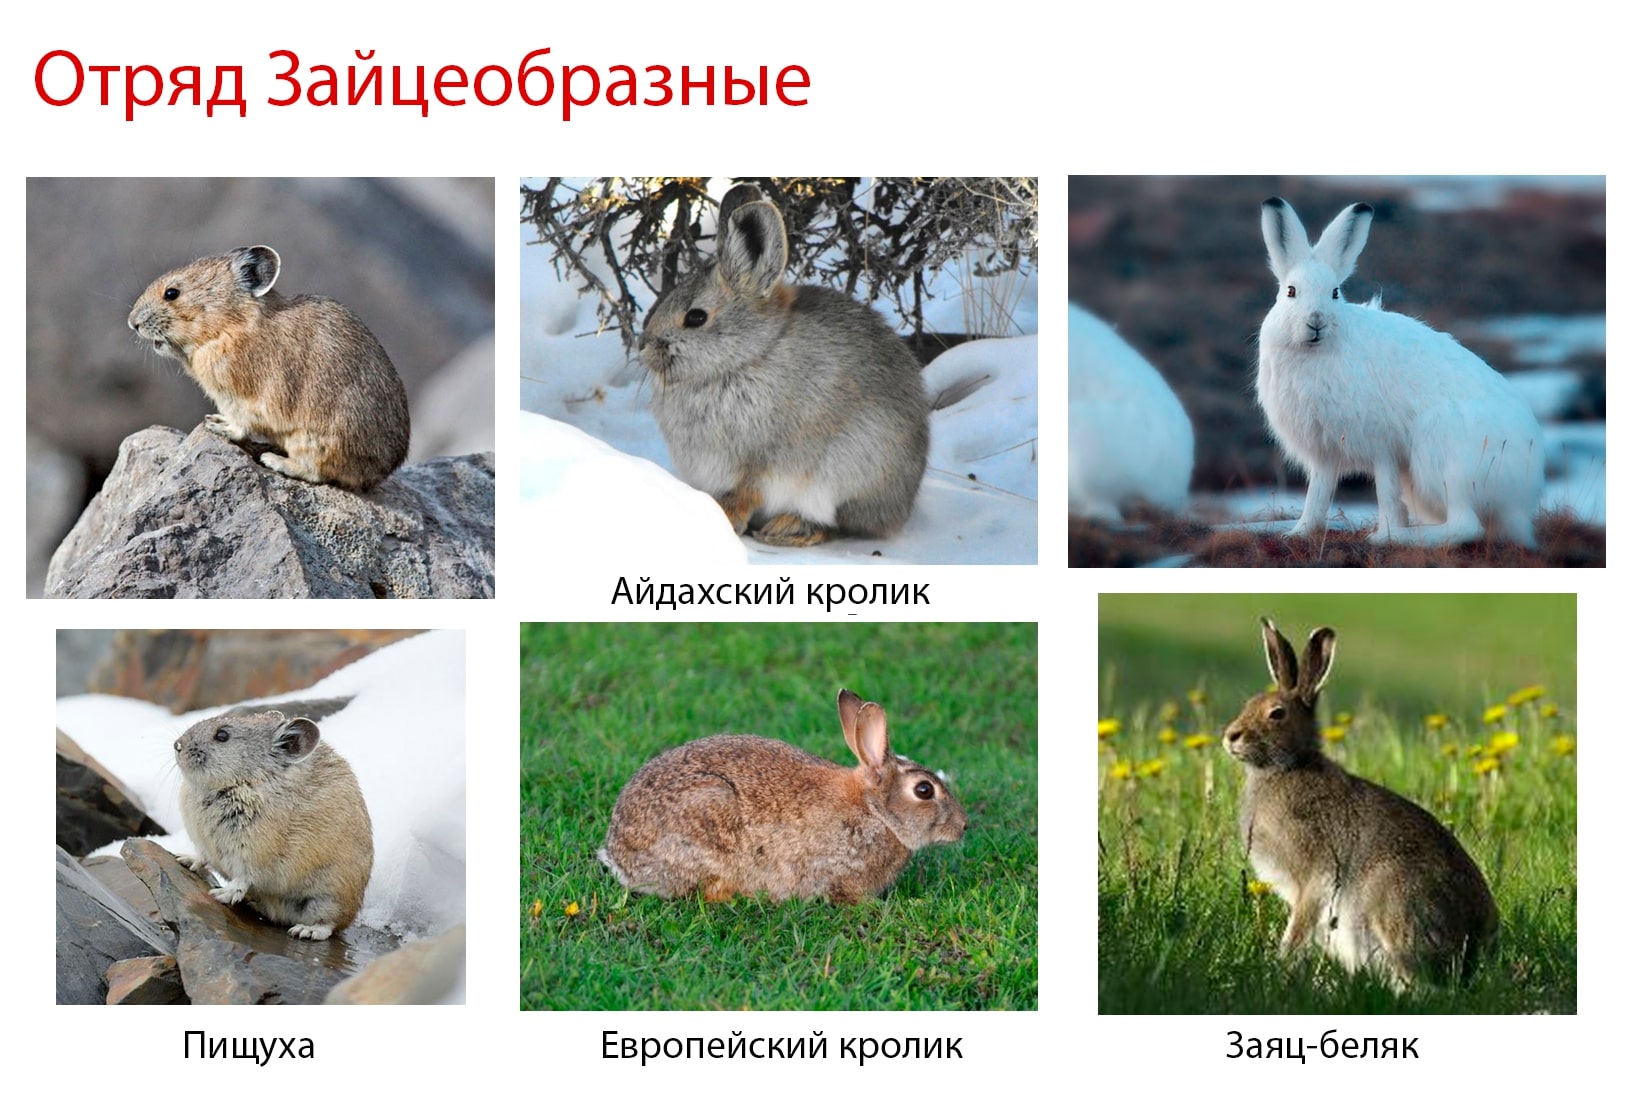 К какому отряду относится кролик. Отряд зайцеобразные. Задания на тему зайцеобразные. Основные признаки отряда зайцеобразные. Зайцеобразные карточки для урока биологии.